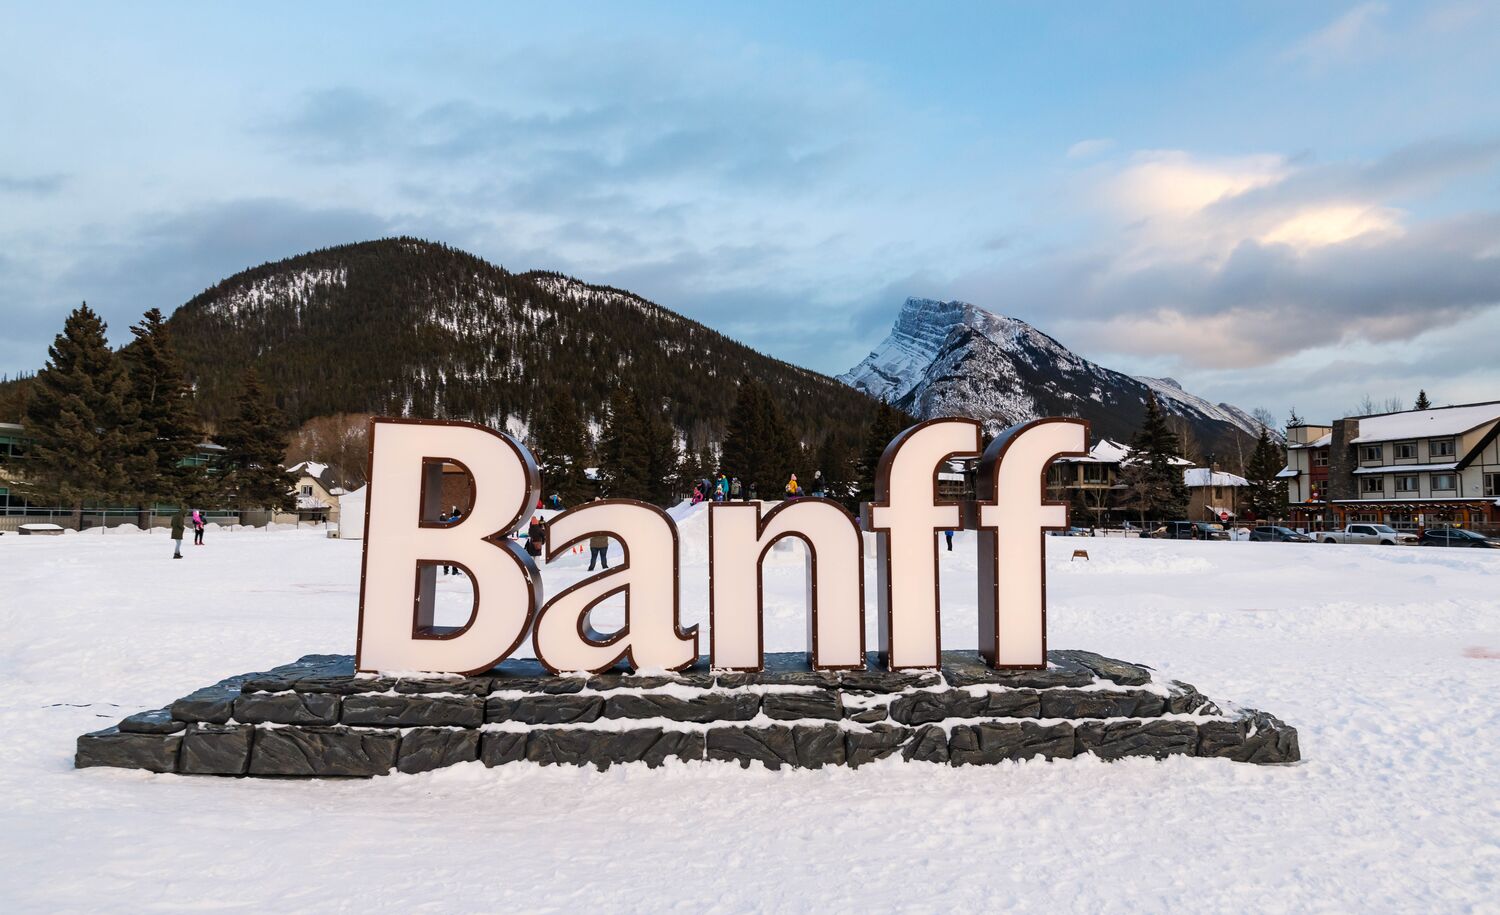 バンフ国立公園のバンフ タウンサイトにある、サルファー山とランドル山が描かれたライトアップされたバンフの標識。